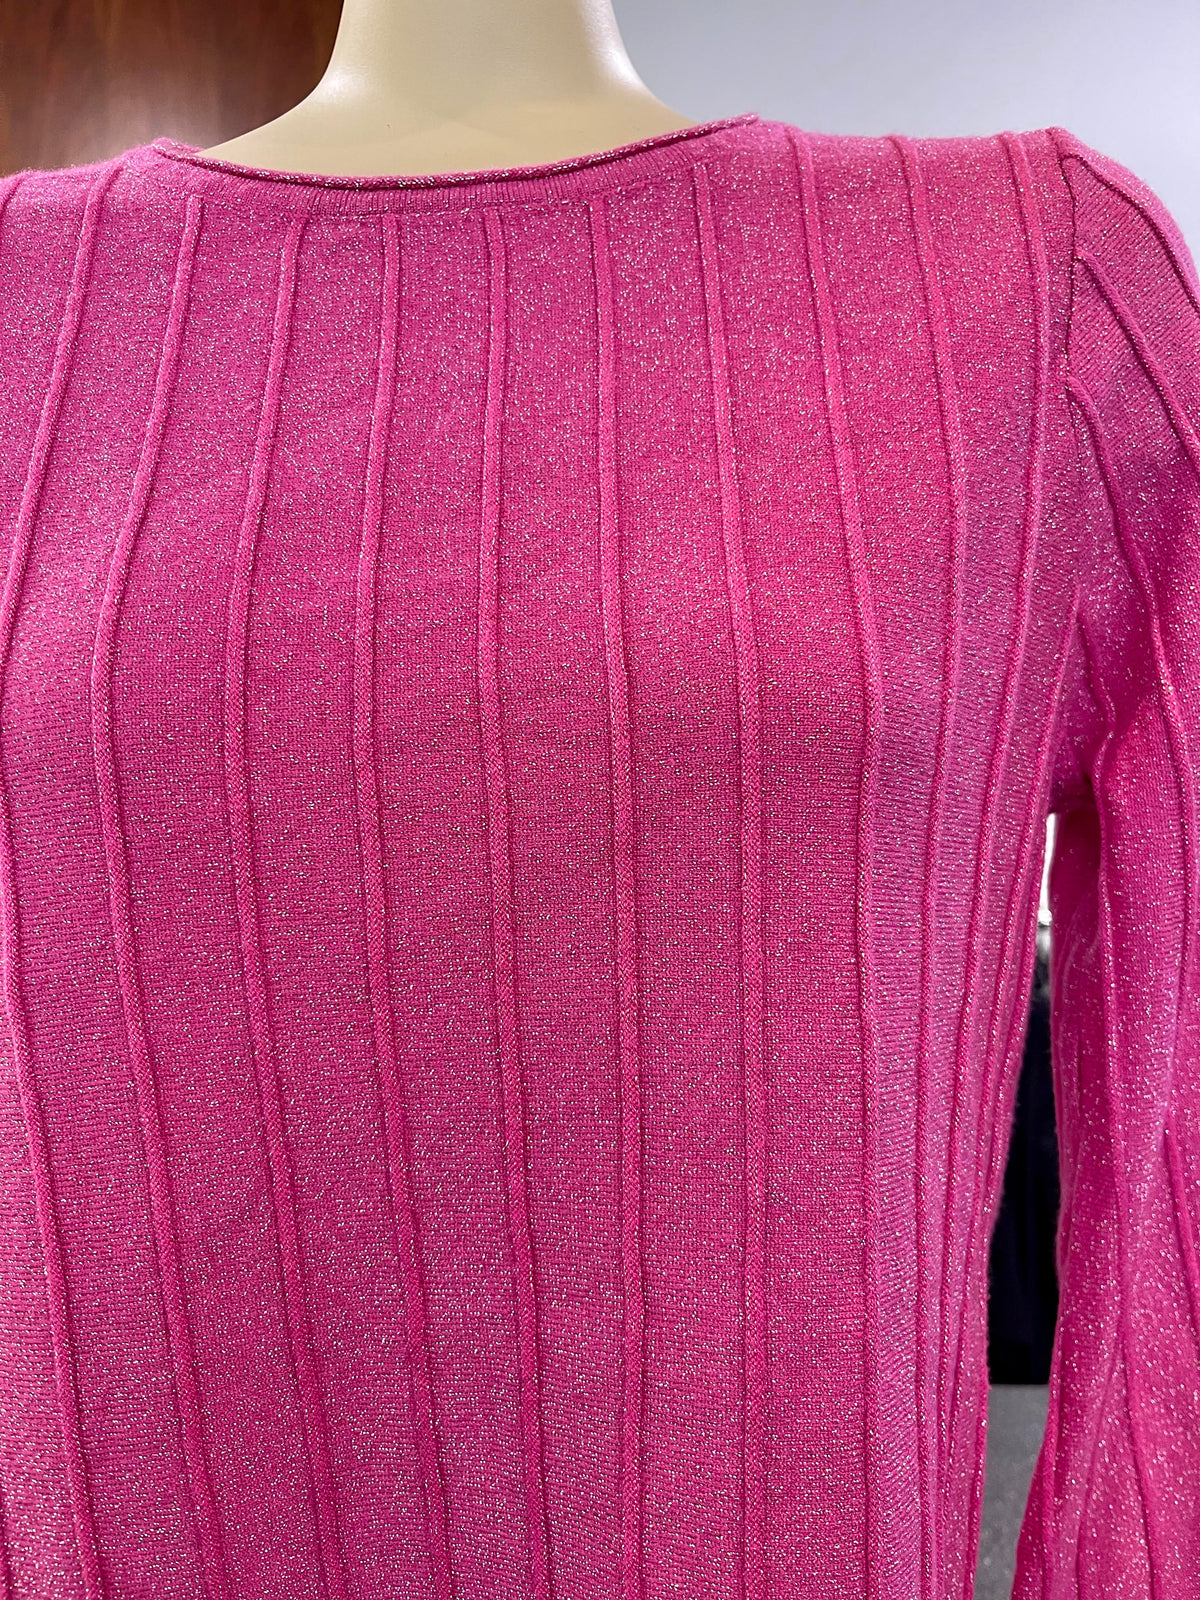 D'Elle Sparkle Knit Jumper - Pink